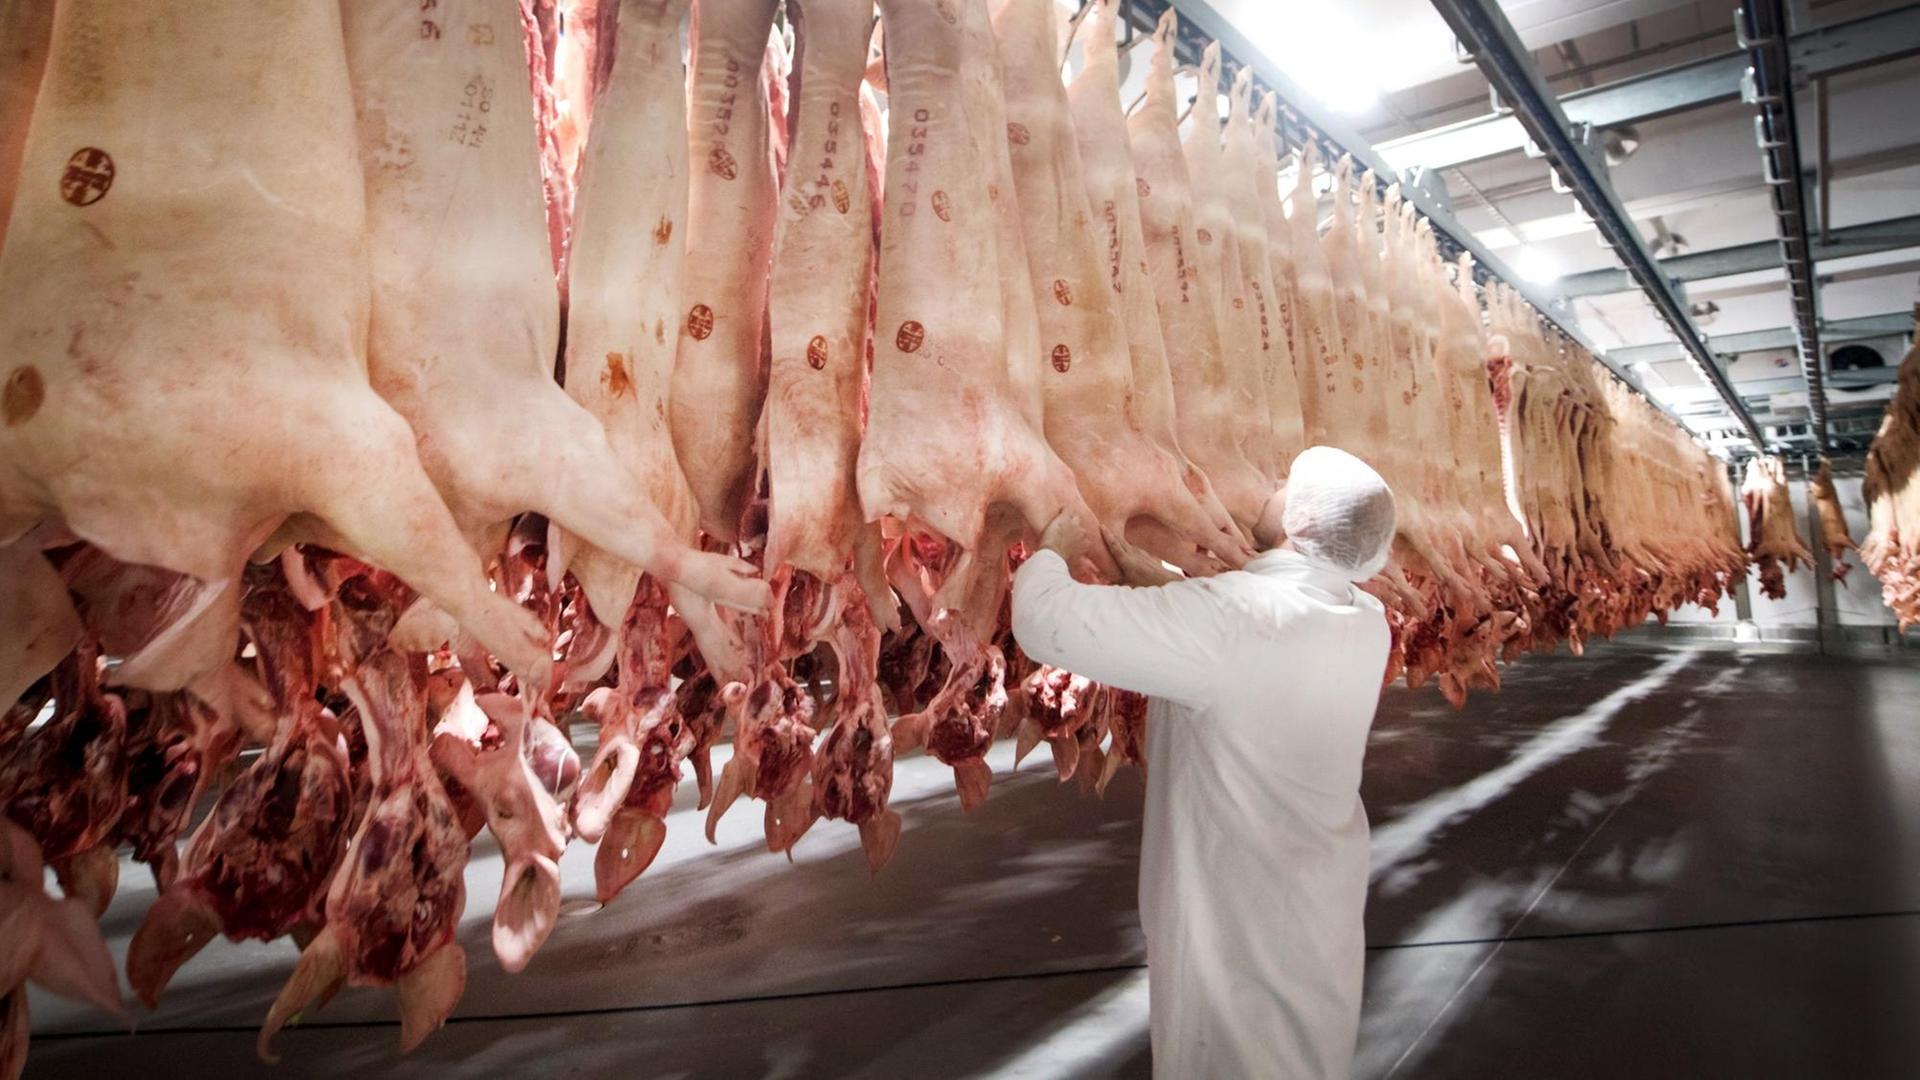 Frisch geschlachtete Schweine hängen in einem Kühl-Haus aufgereiht, davor steht ein Arbeiter.